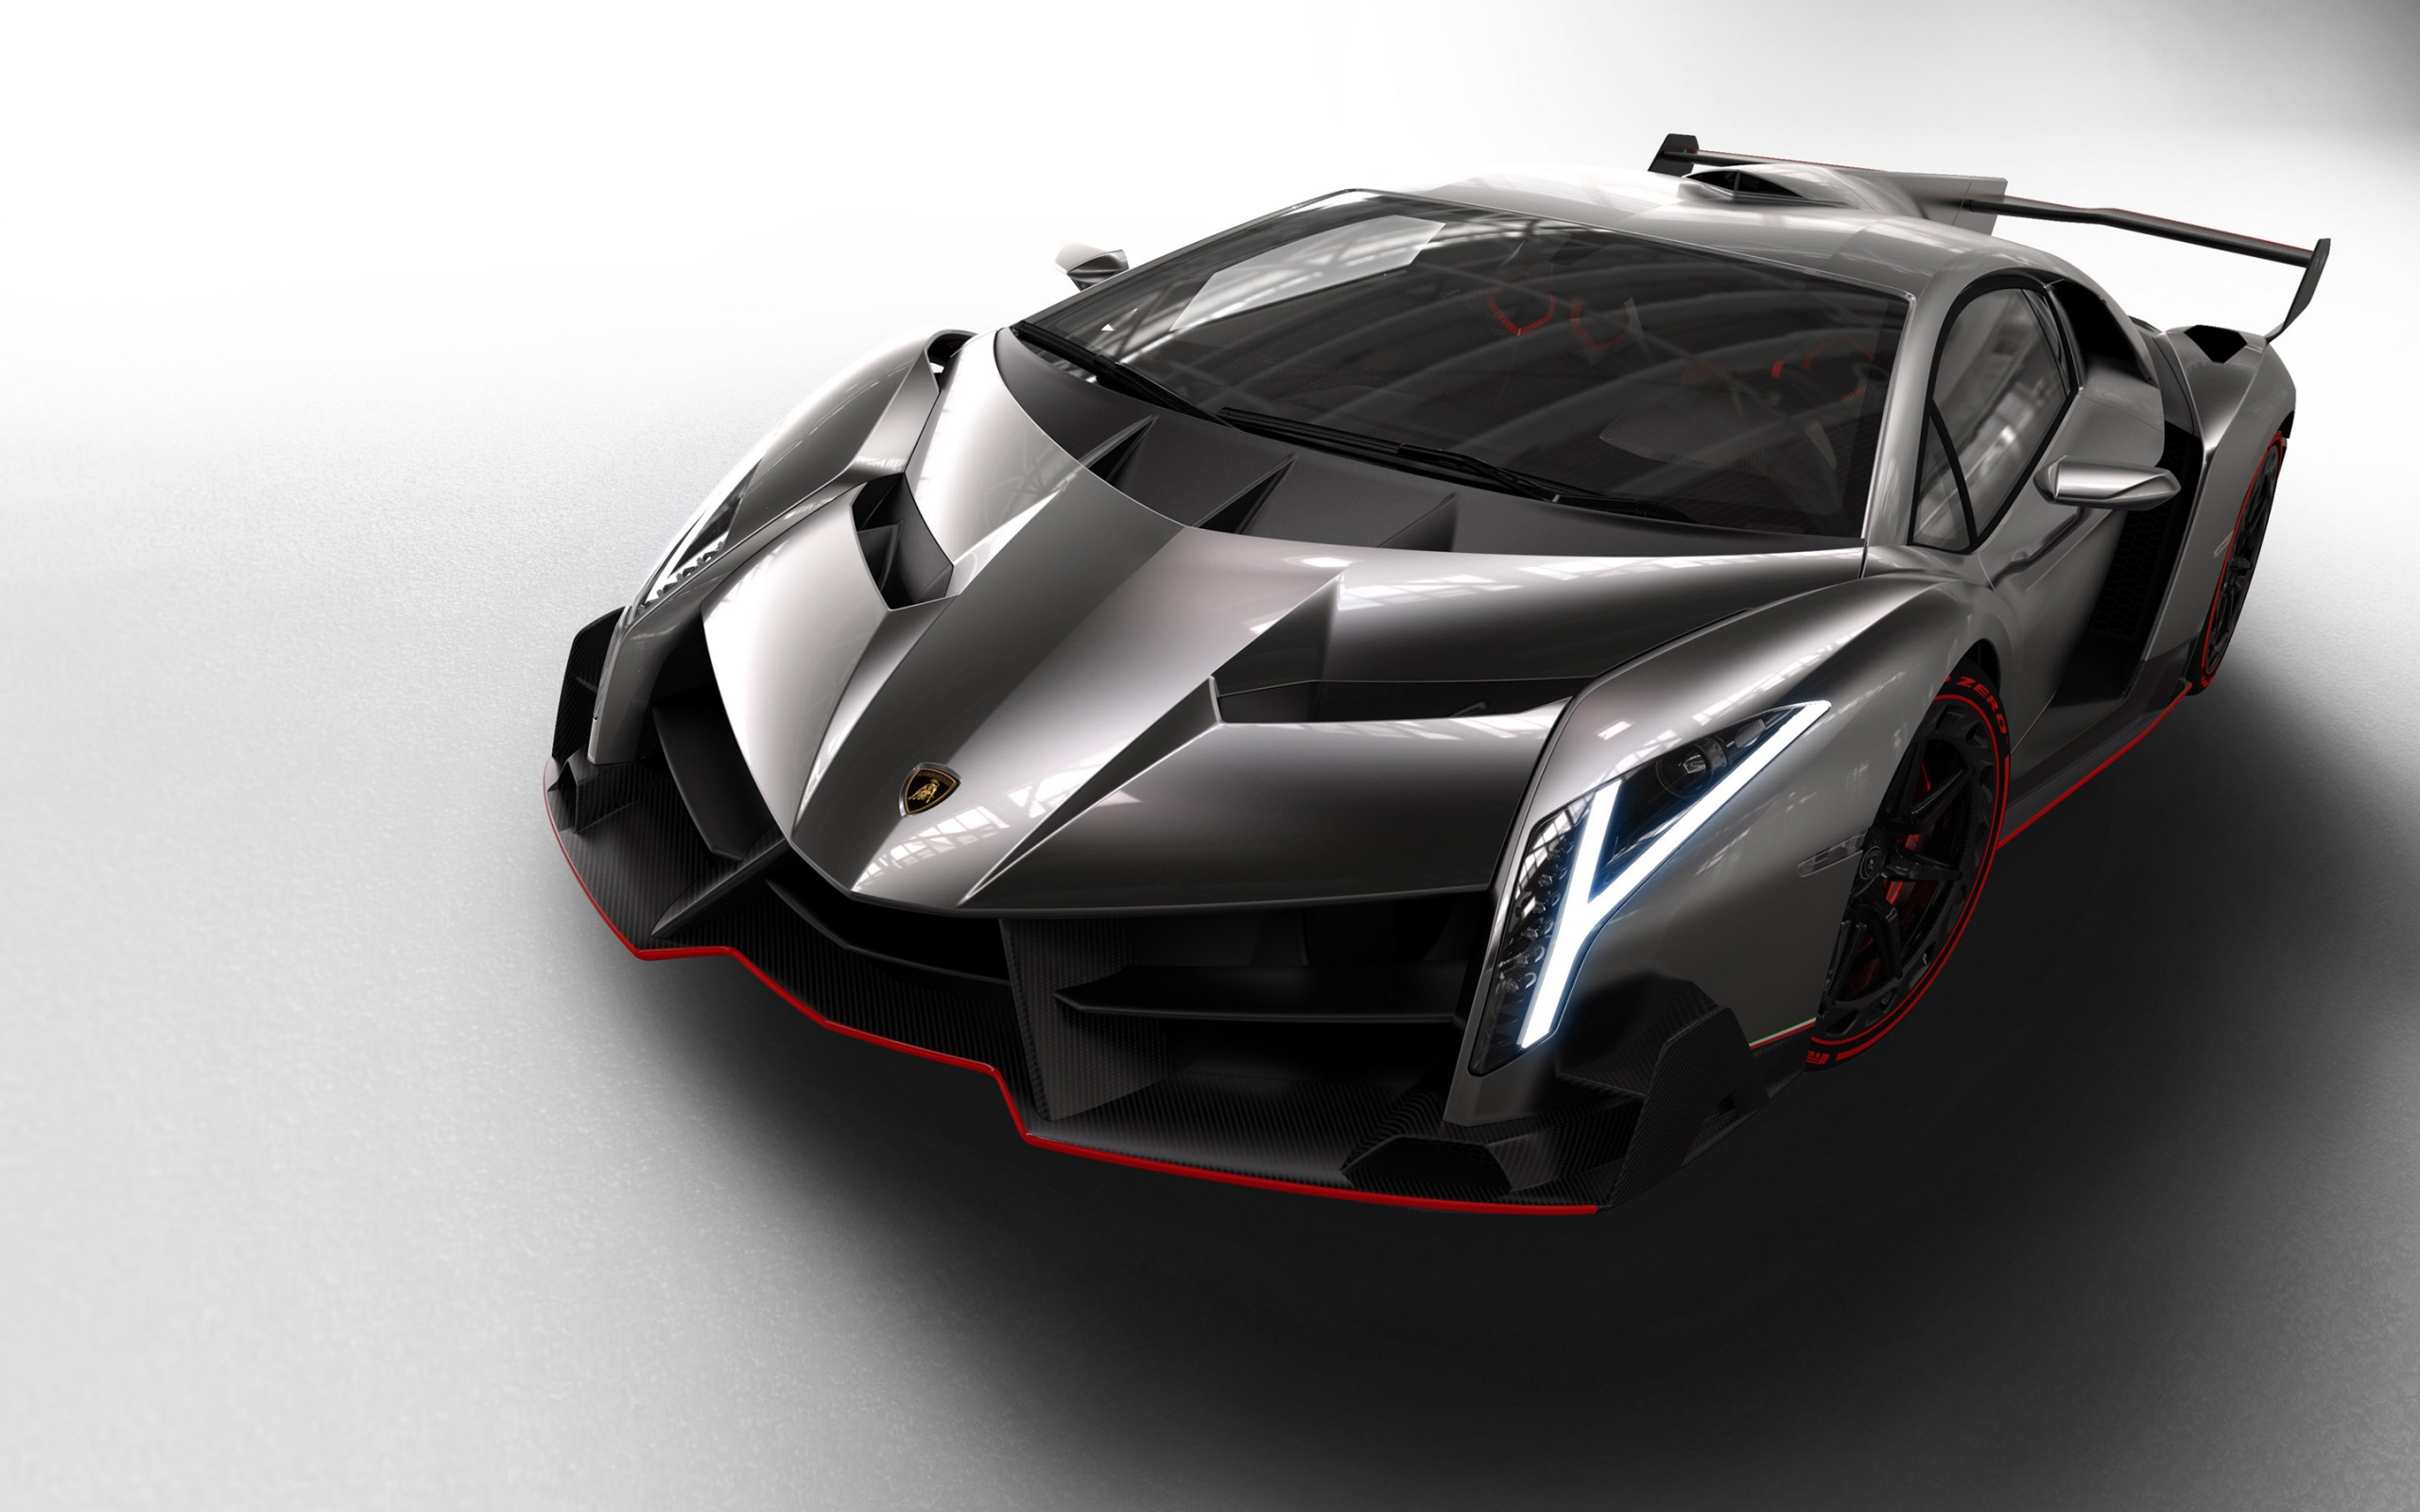 Lamborghini Veneno Studio for 2560 x 1600 widescreen resolution